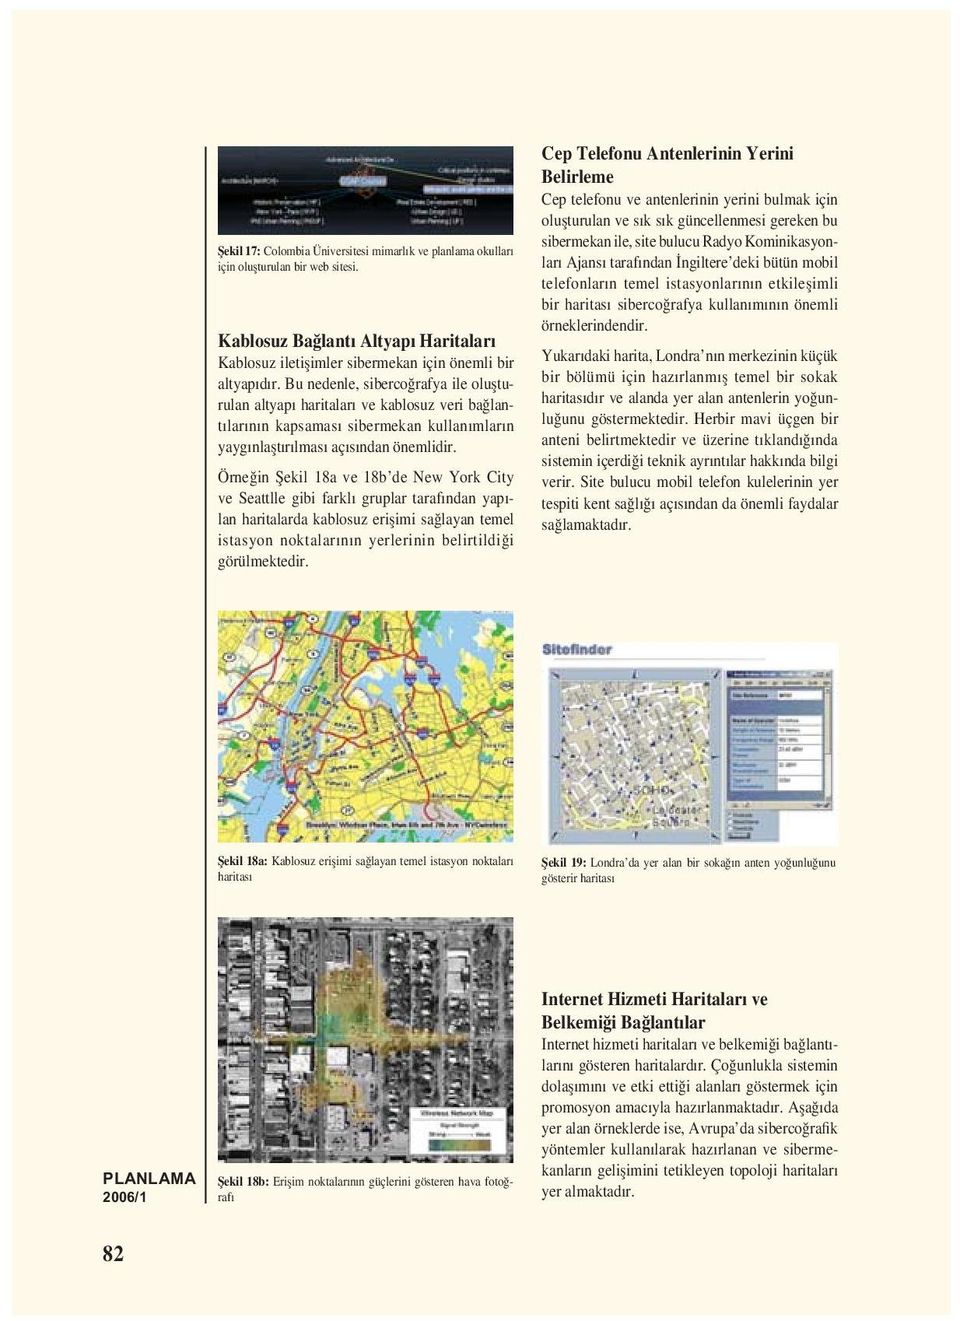 Örneğin Șekil 18a ve 18b de New York City ve Seattlle gibi farklı gruplar tarafından yapılan haritalarda kablosuz erișimi sağlayan temel istasyon noktalarının yerlerinin belirtildiği görülmektedir.